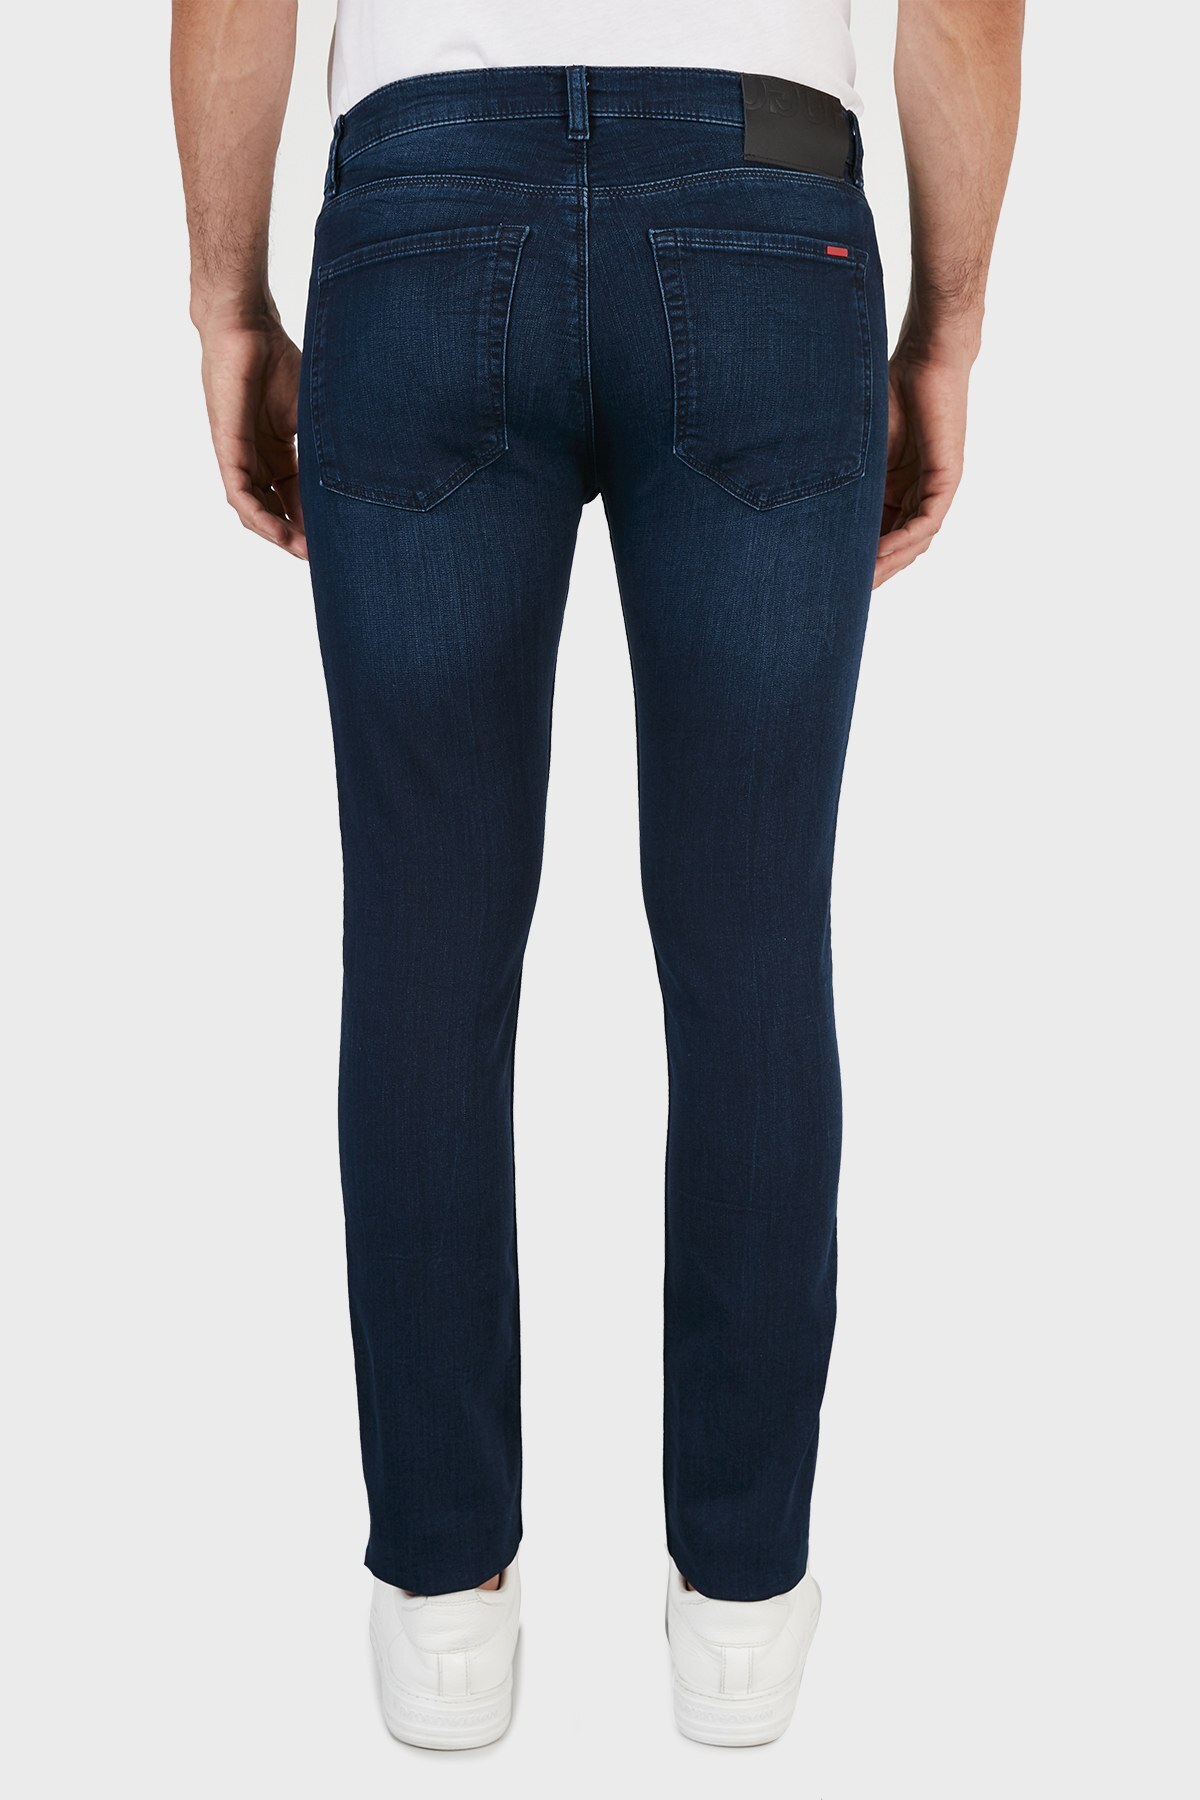 Hugo Boss Extra Slim Fit Cepli Pamuklu Jeans Erkek Kot Pantolon 50453495 408 LACİVERT